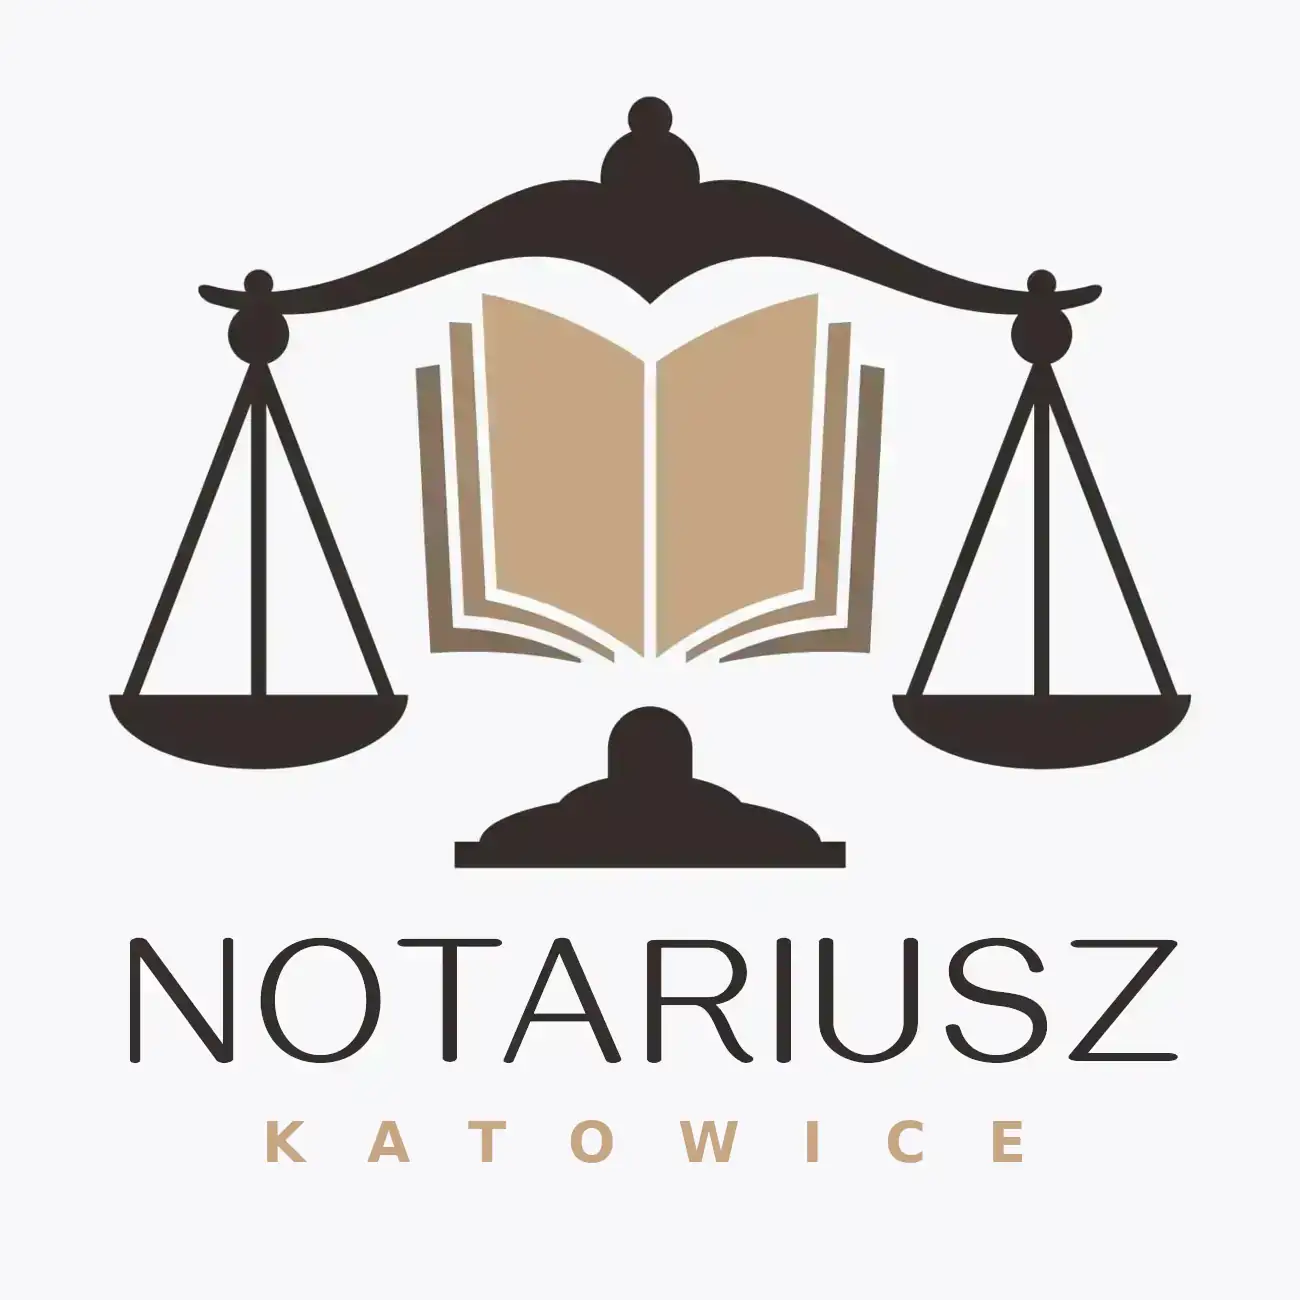 Notariusz Katowice - Kancelaria Notarialna / Rejent